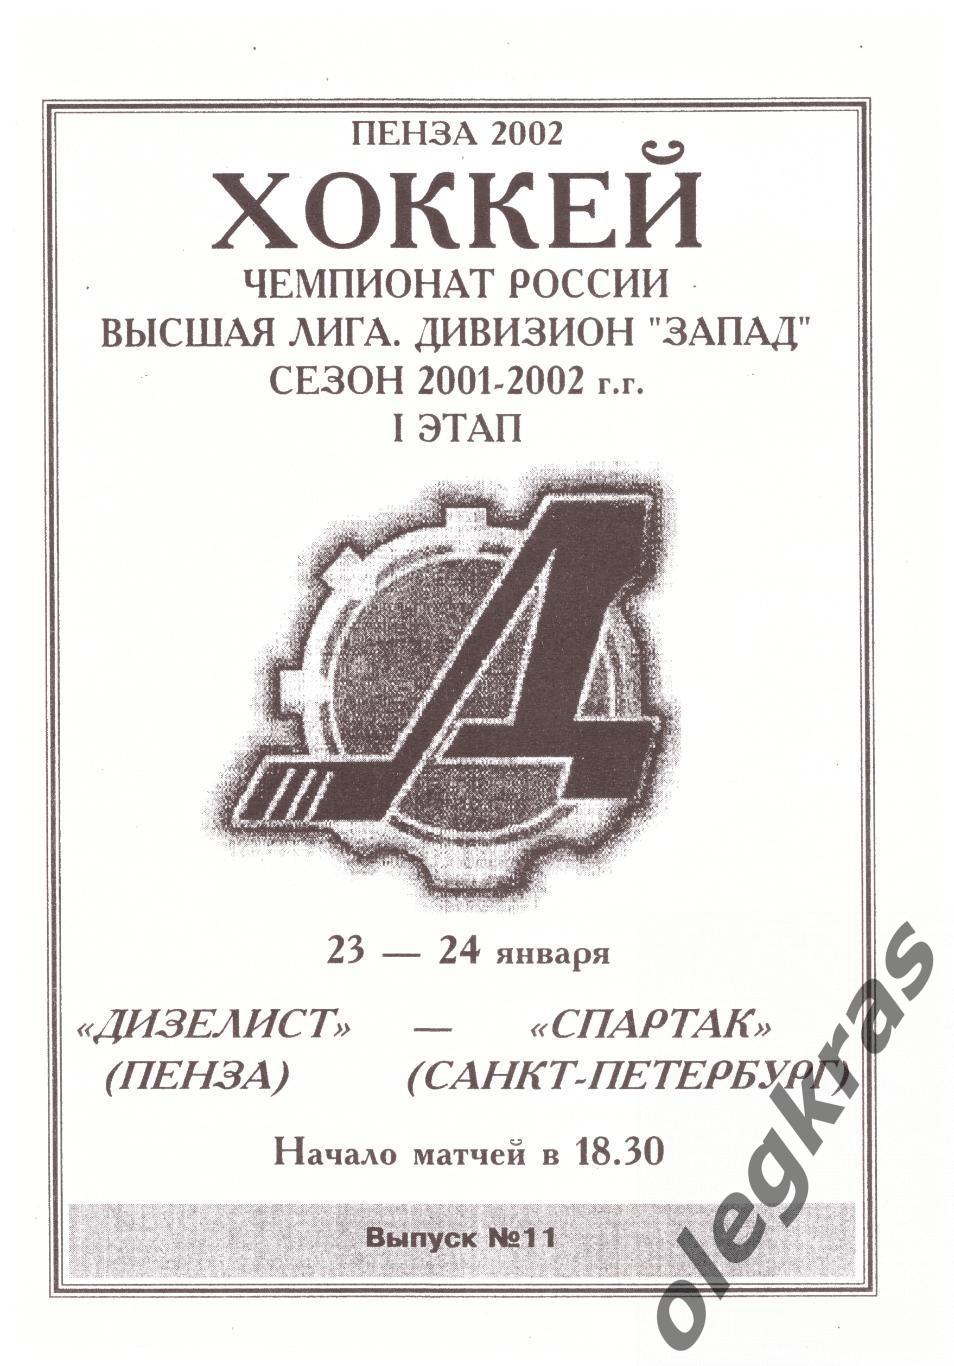 Дизелист(Пенза) - Спартак(Санкт - Петербург) - 23-24 января 2002 года.